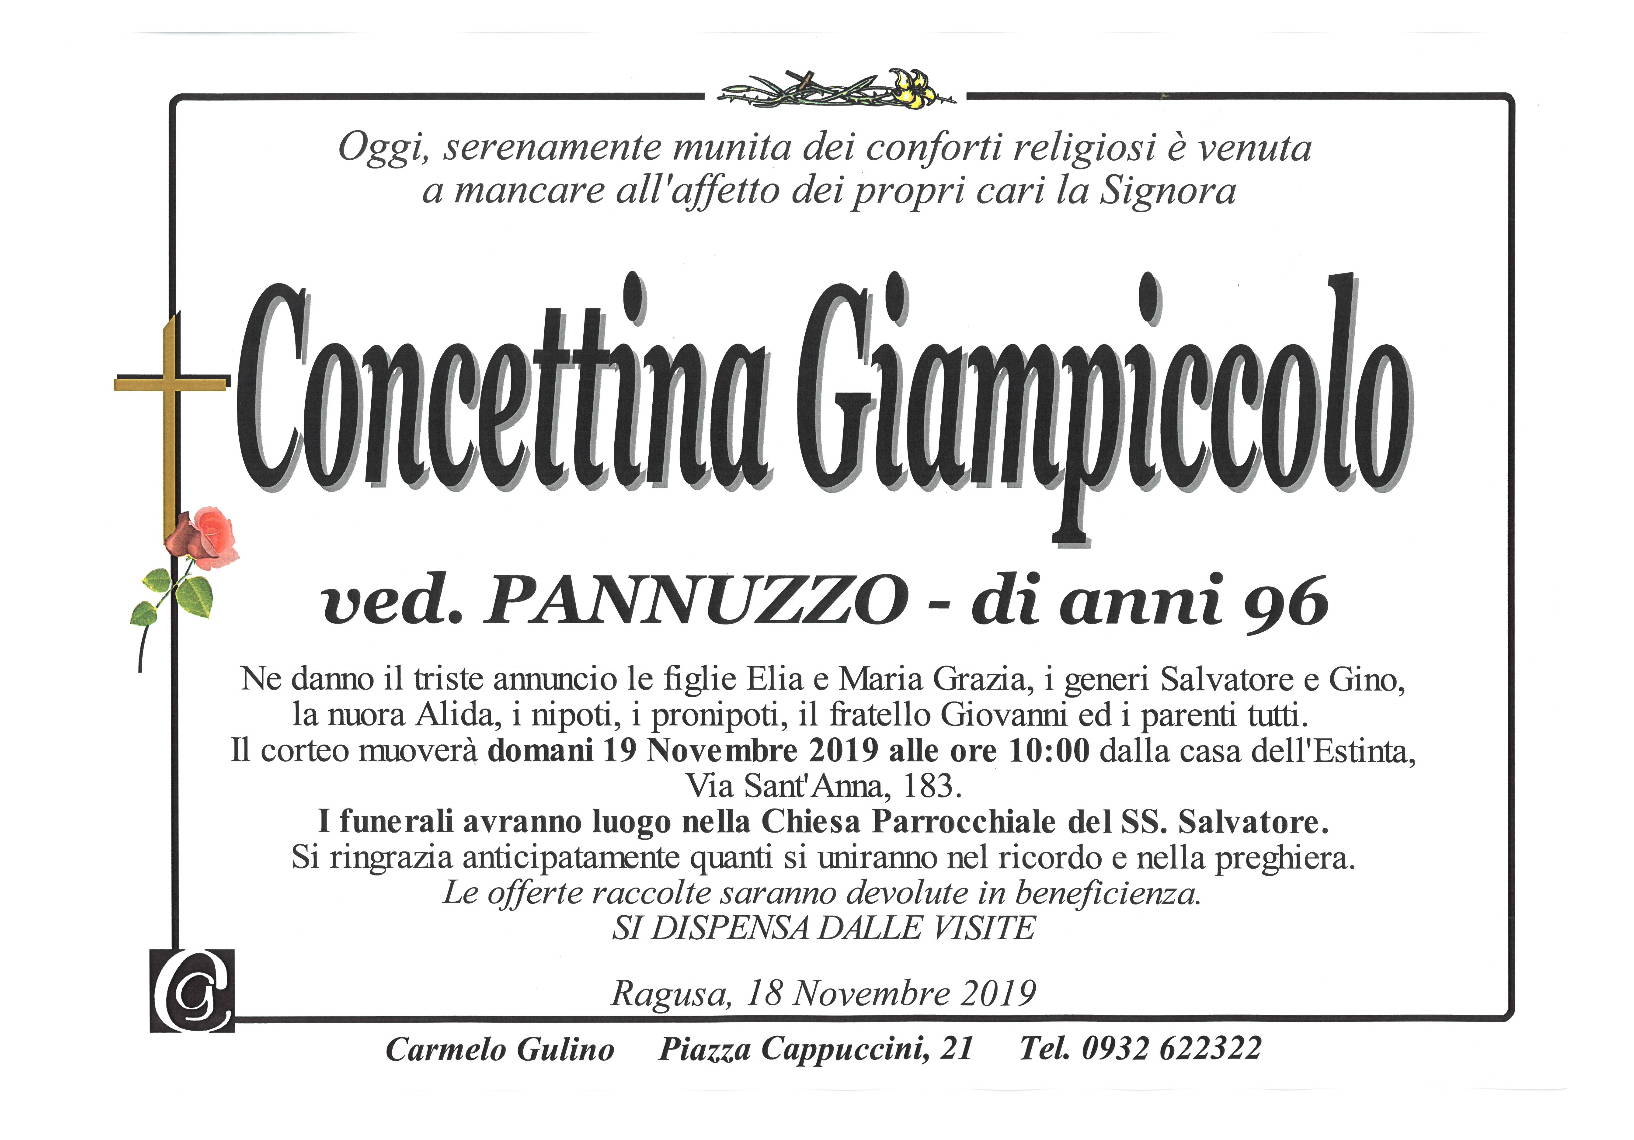 Concettina Giampiccolo